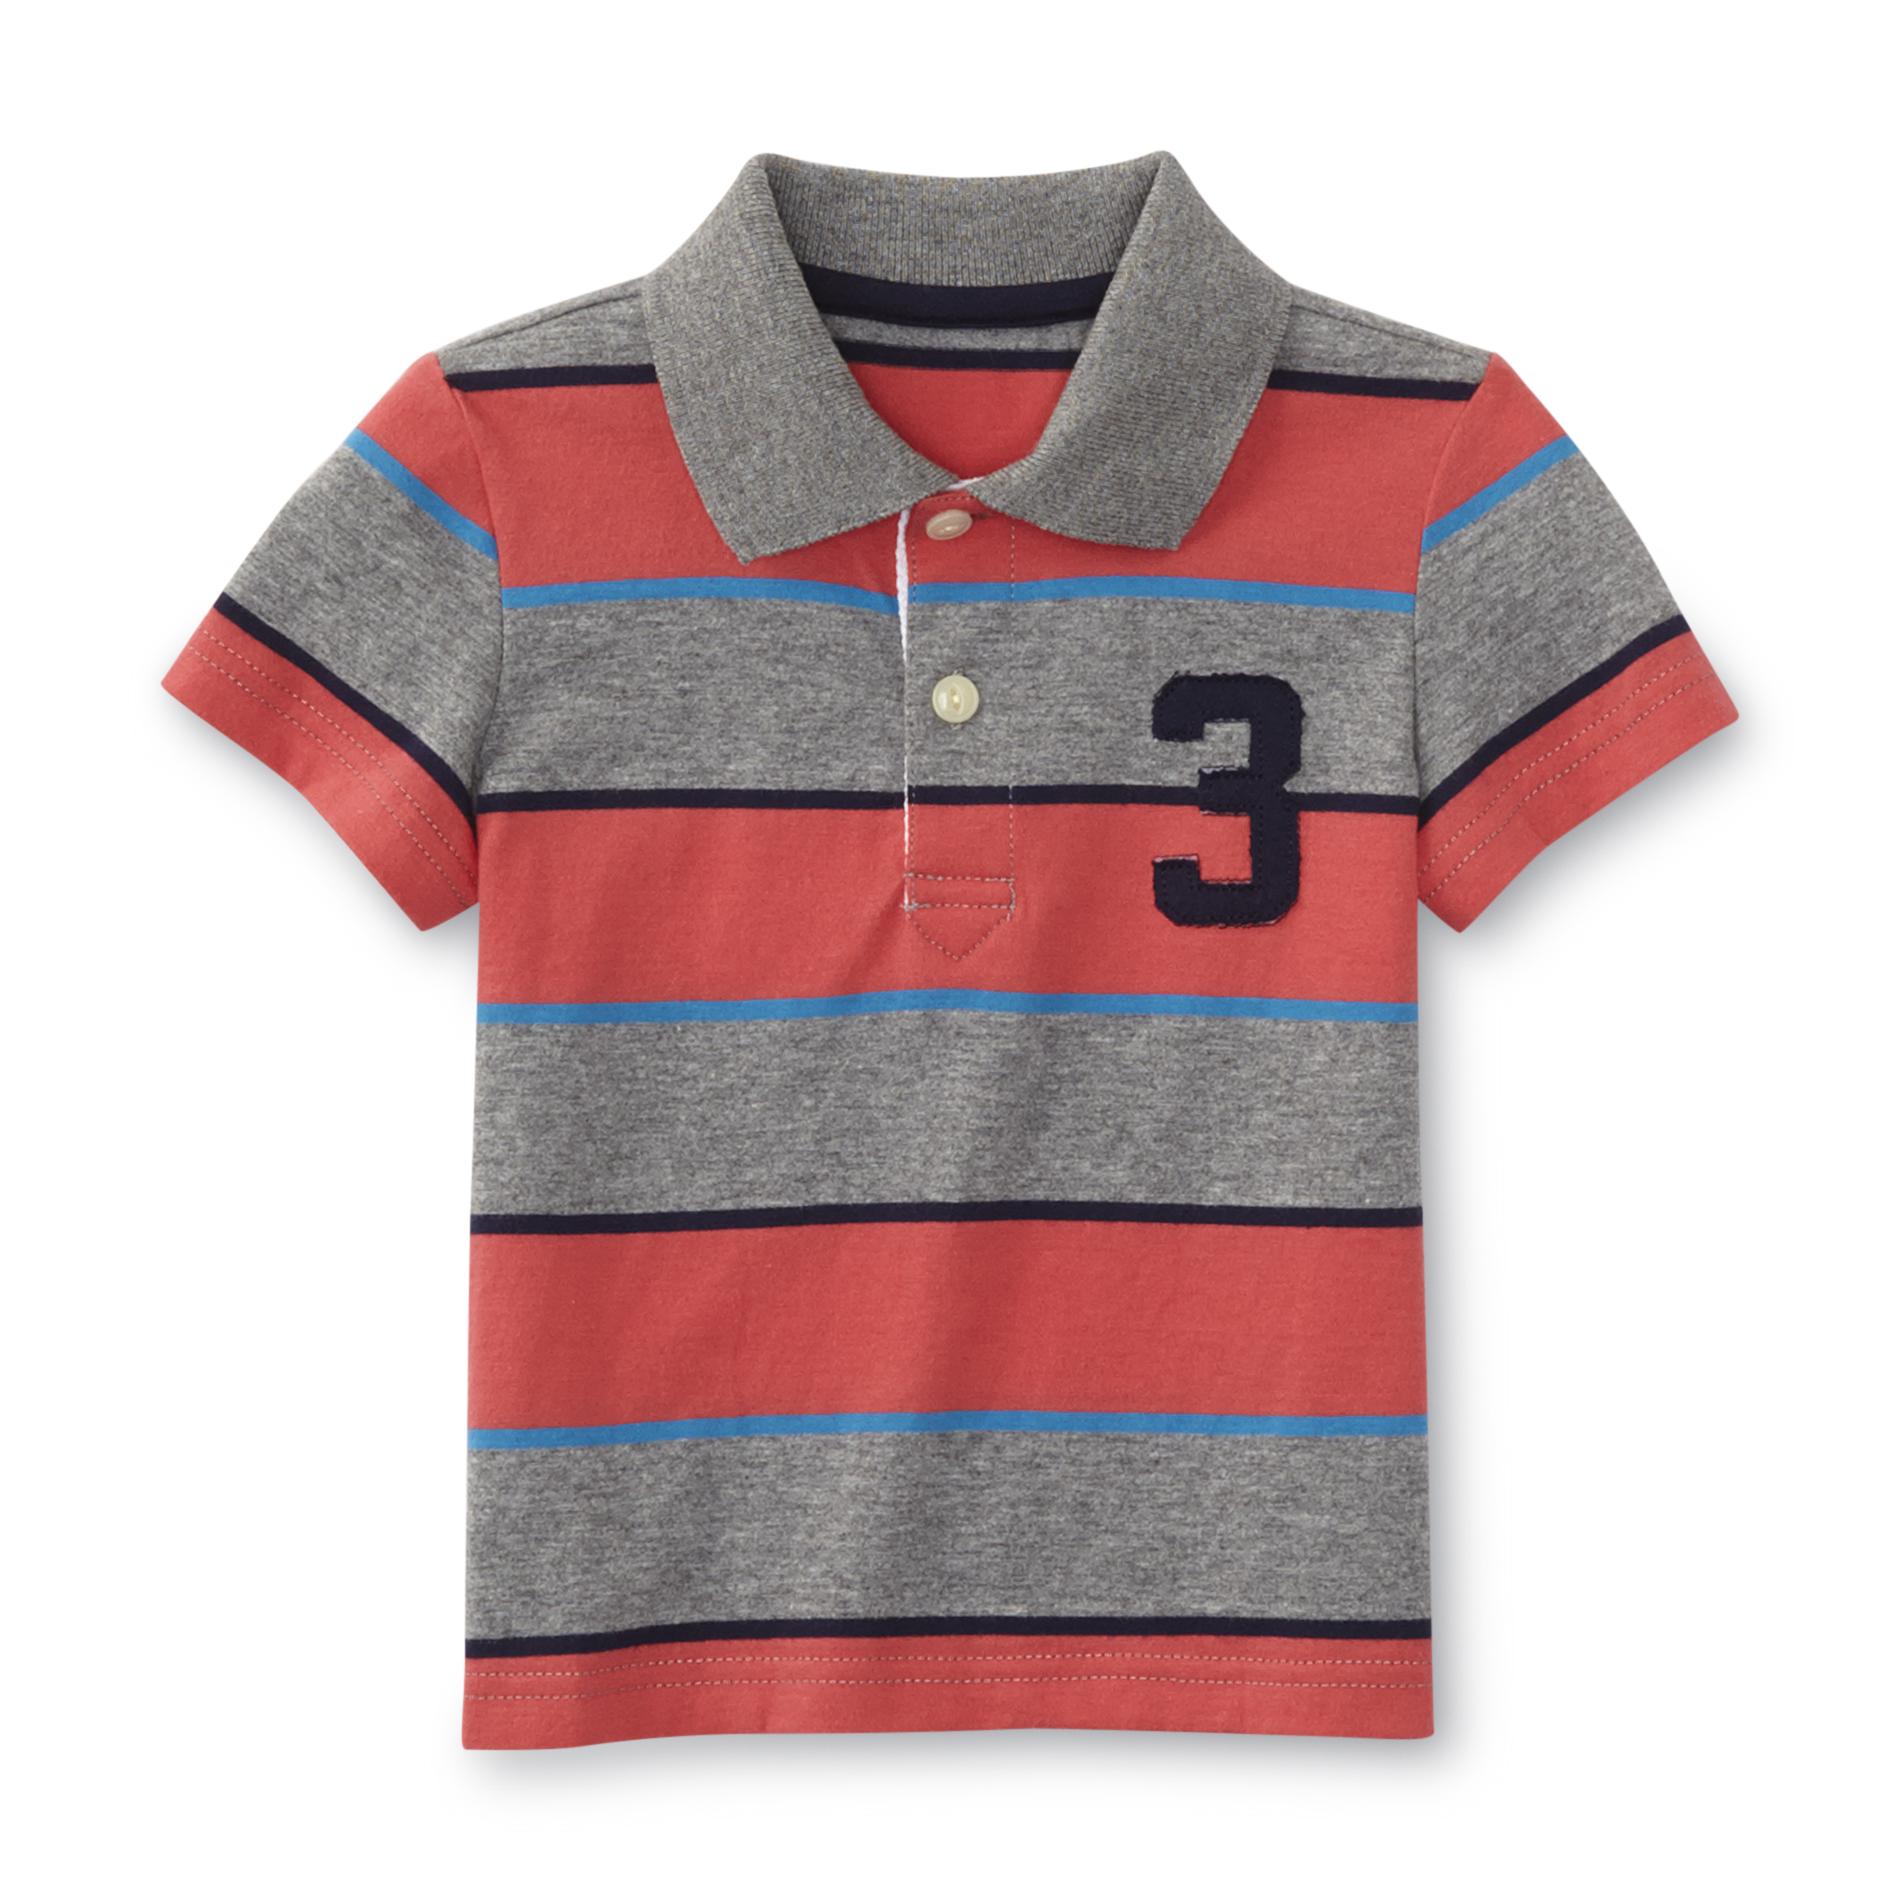 Toughskins Infant & Toddler Boy's Knit Polo Shirt - Striped